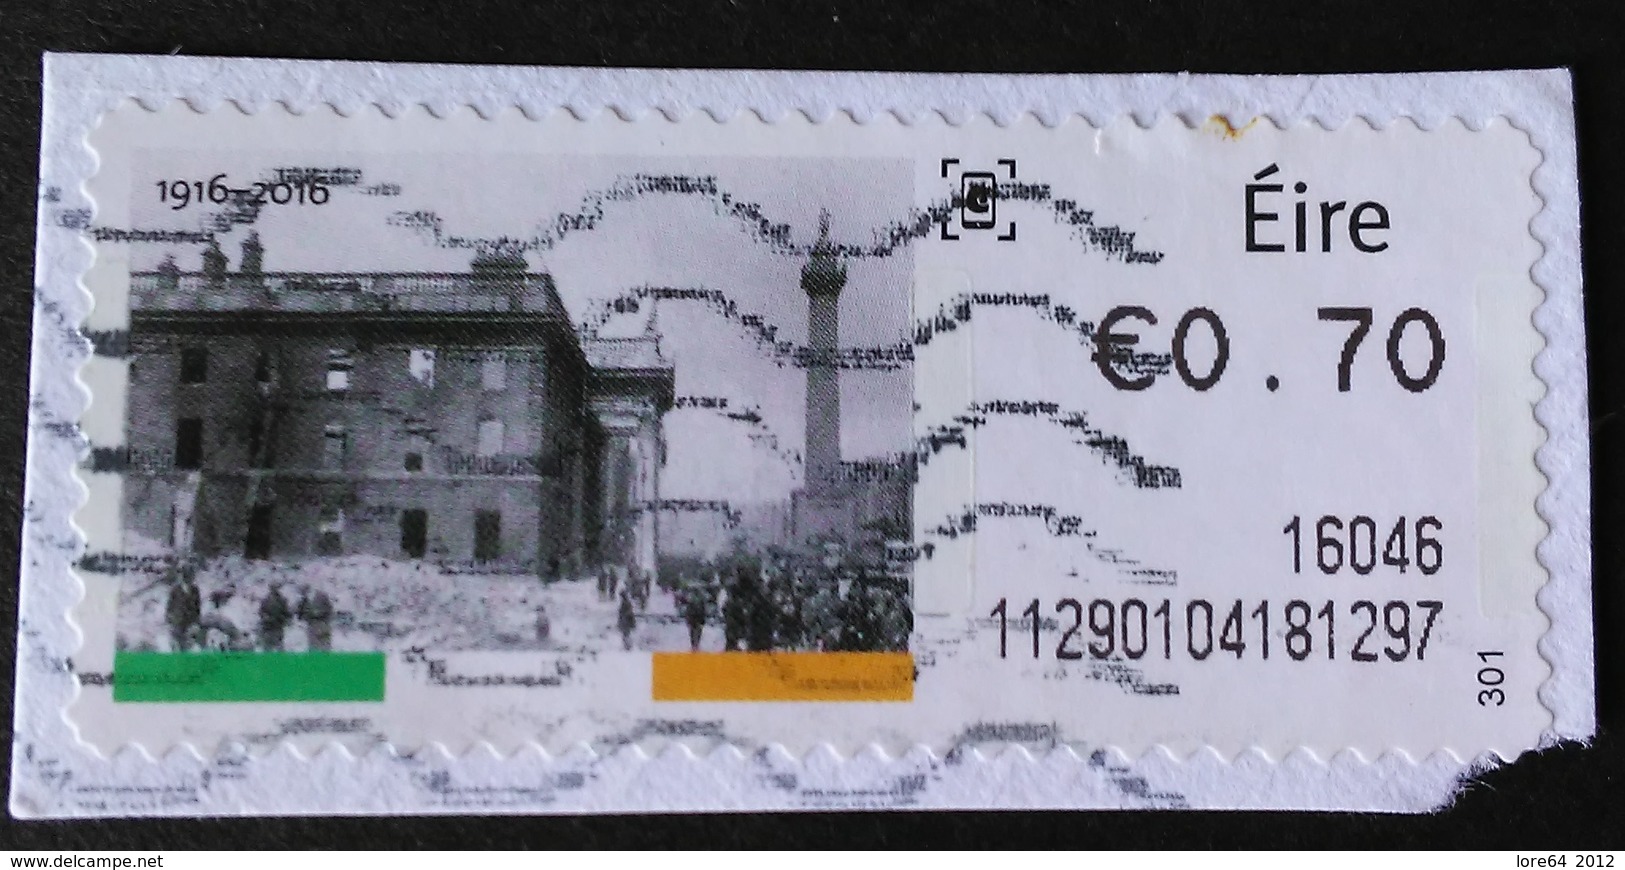 IRLANDA ATM 2016 - Vignettes D'affranchissement (Frama)